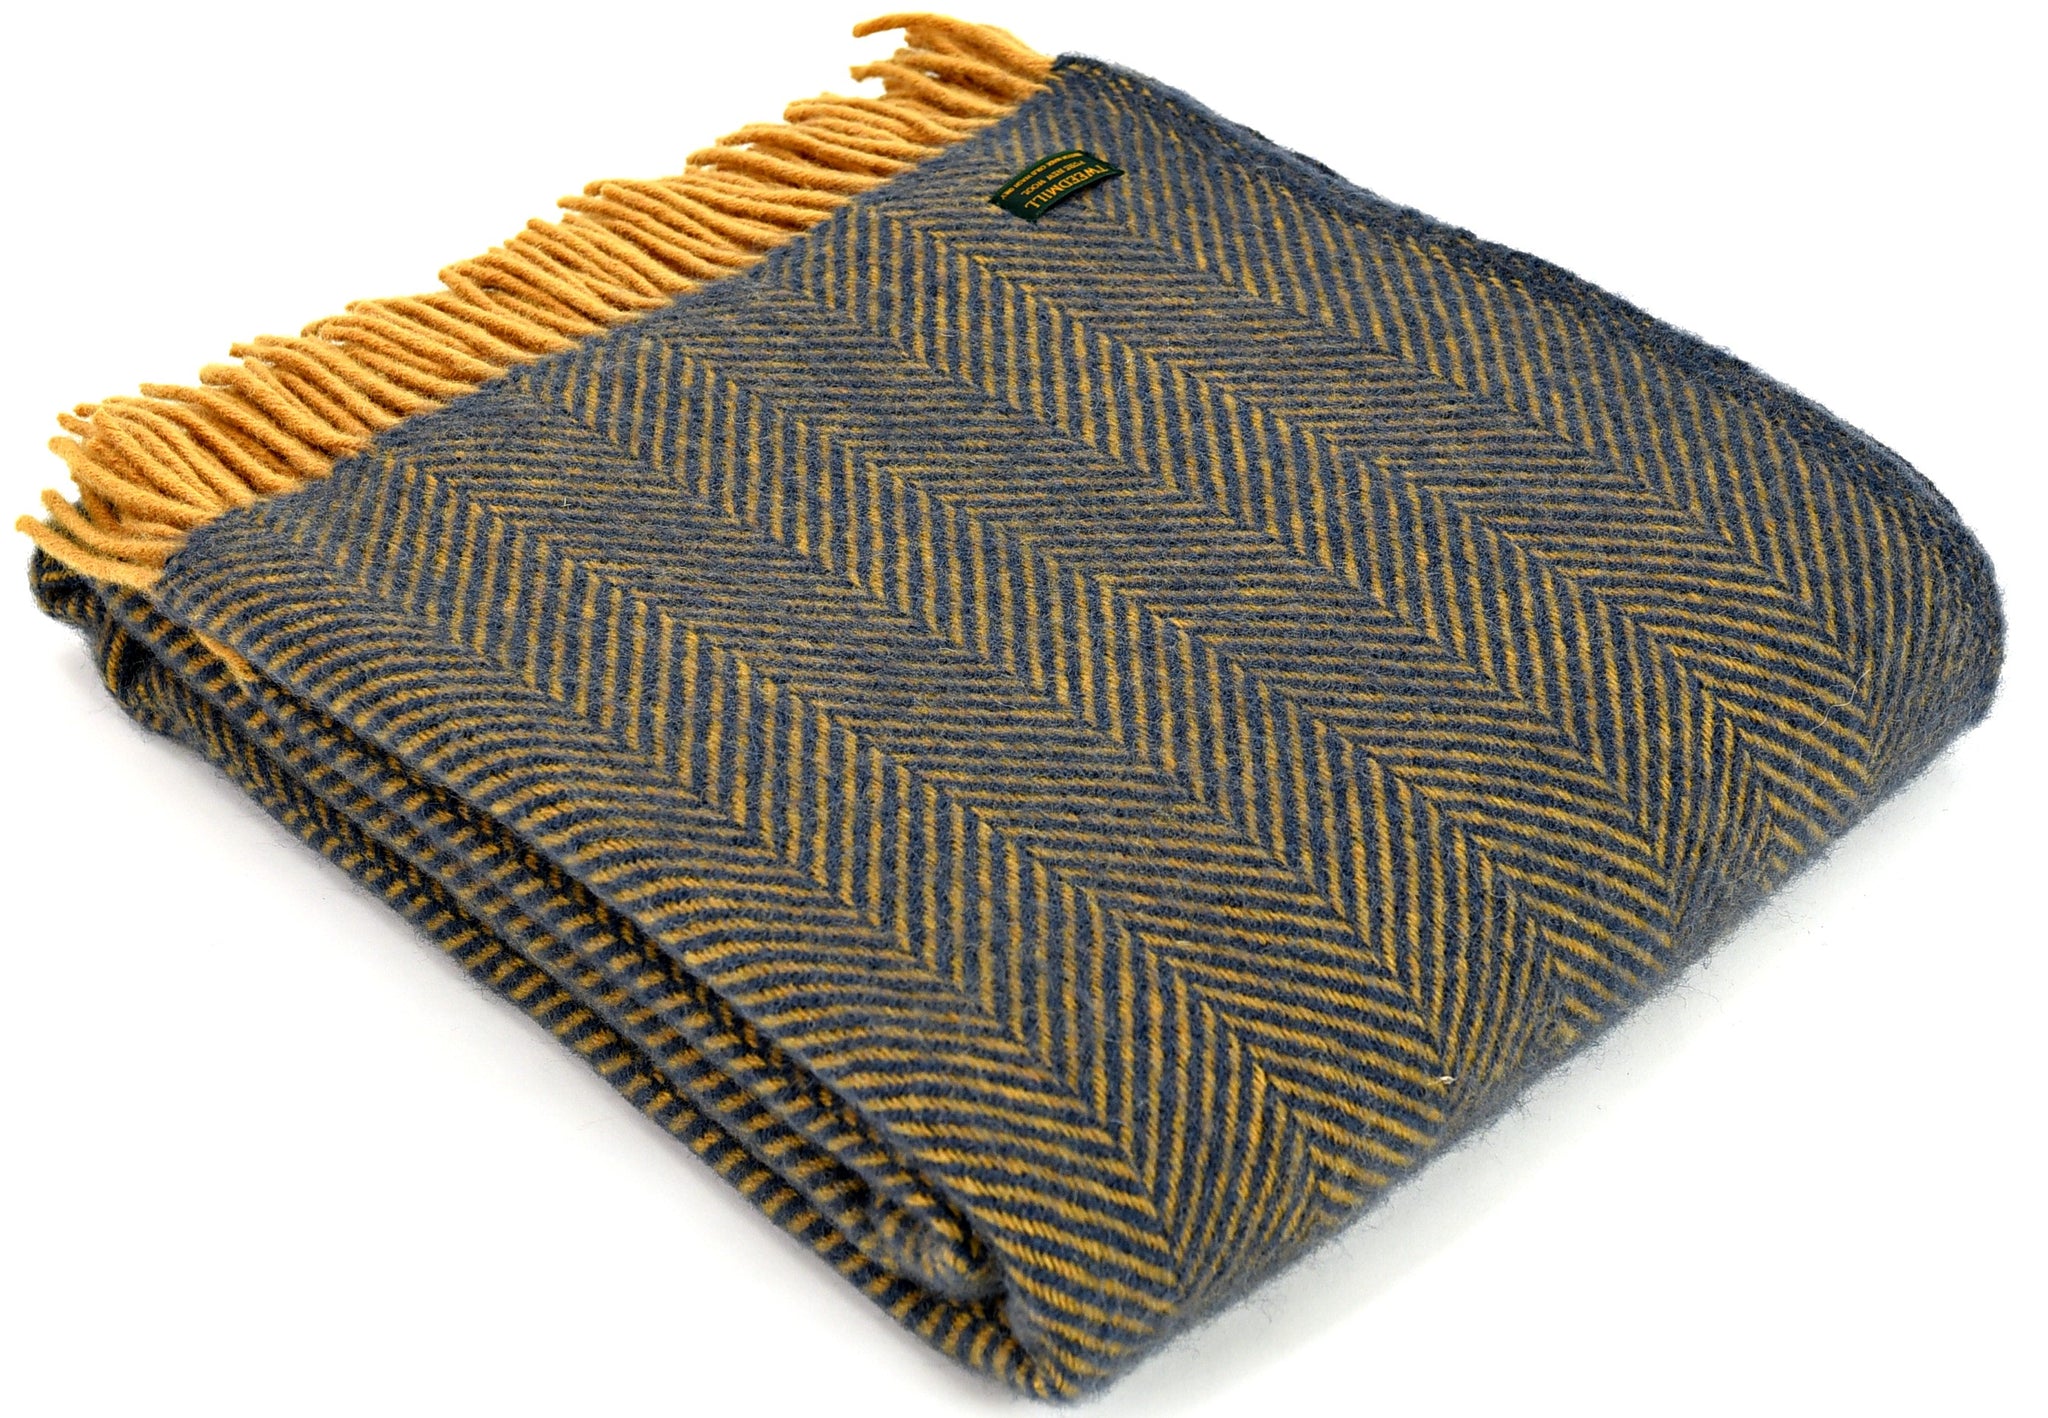 Tweedmill Navy and Mustard Herringbone Wool Blanket Throw